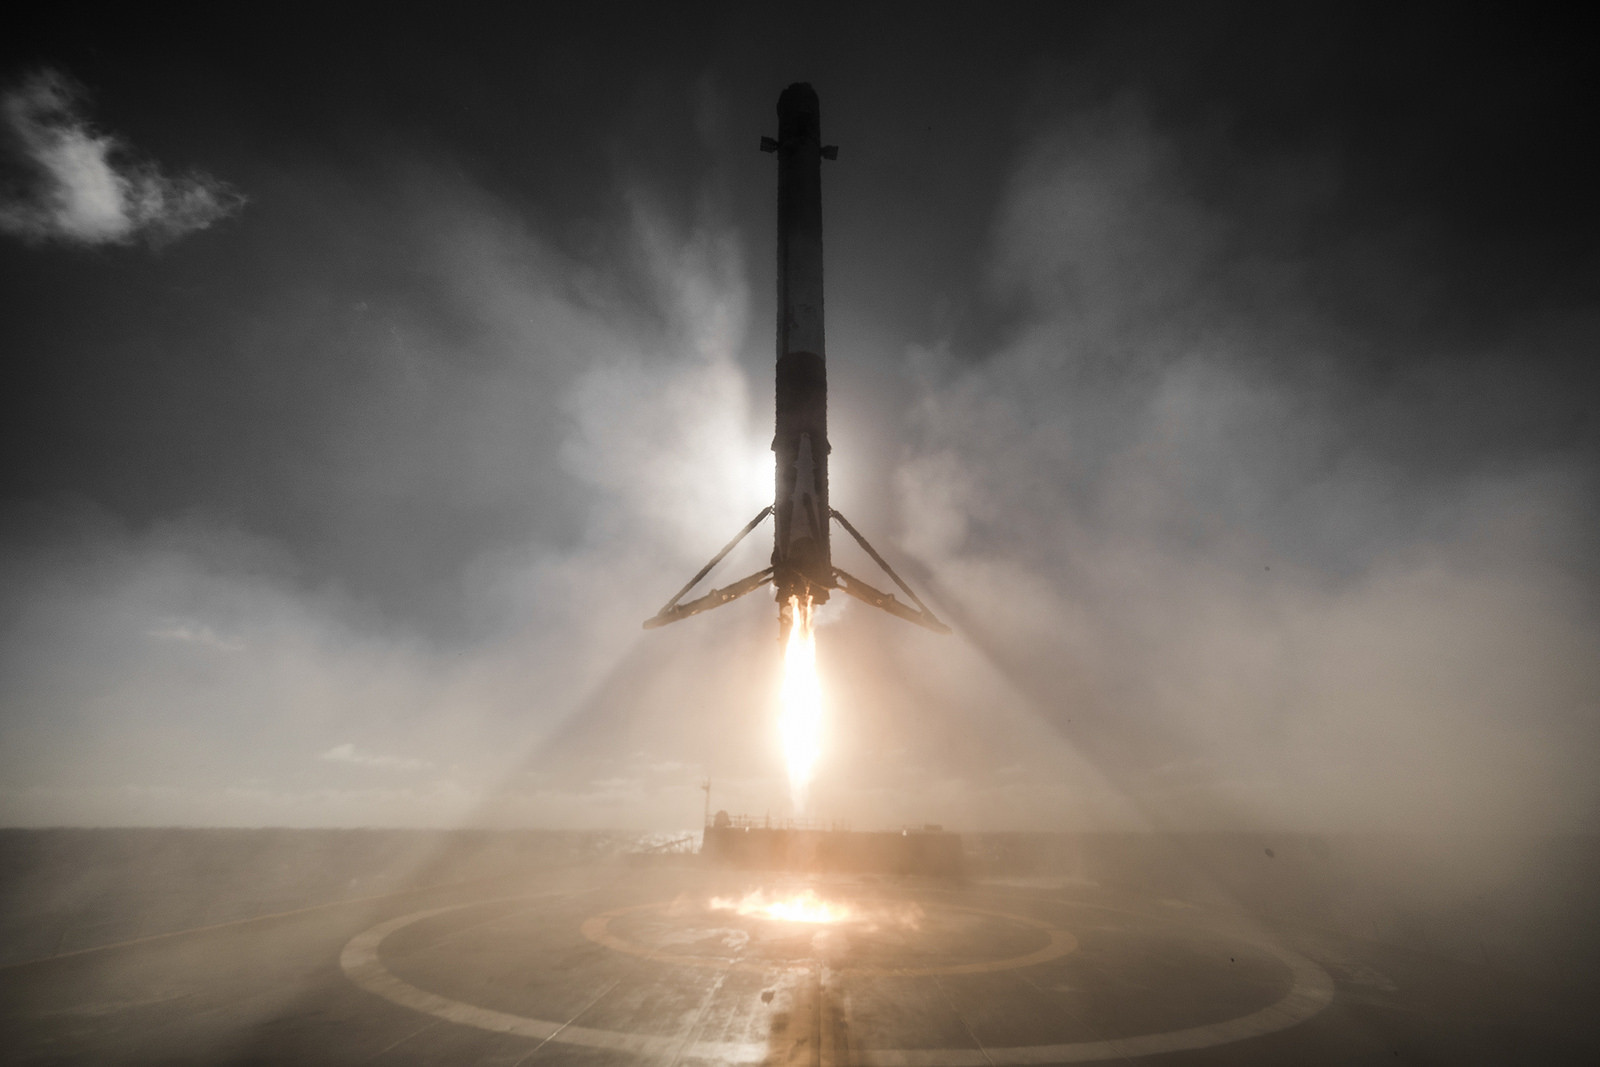 Otra toma del Falcon 9 aterrizando en una plataforma flotante